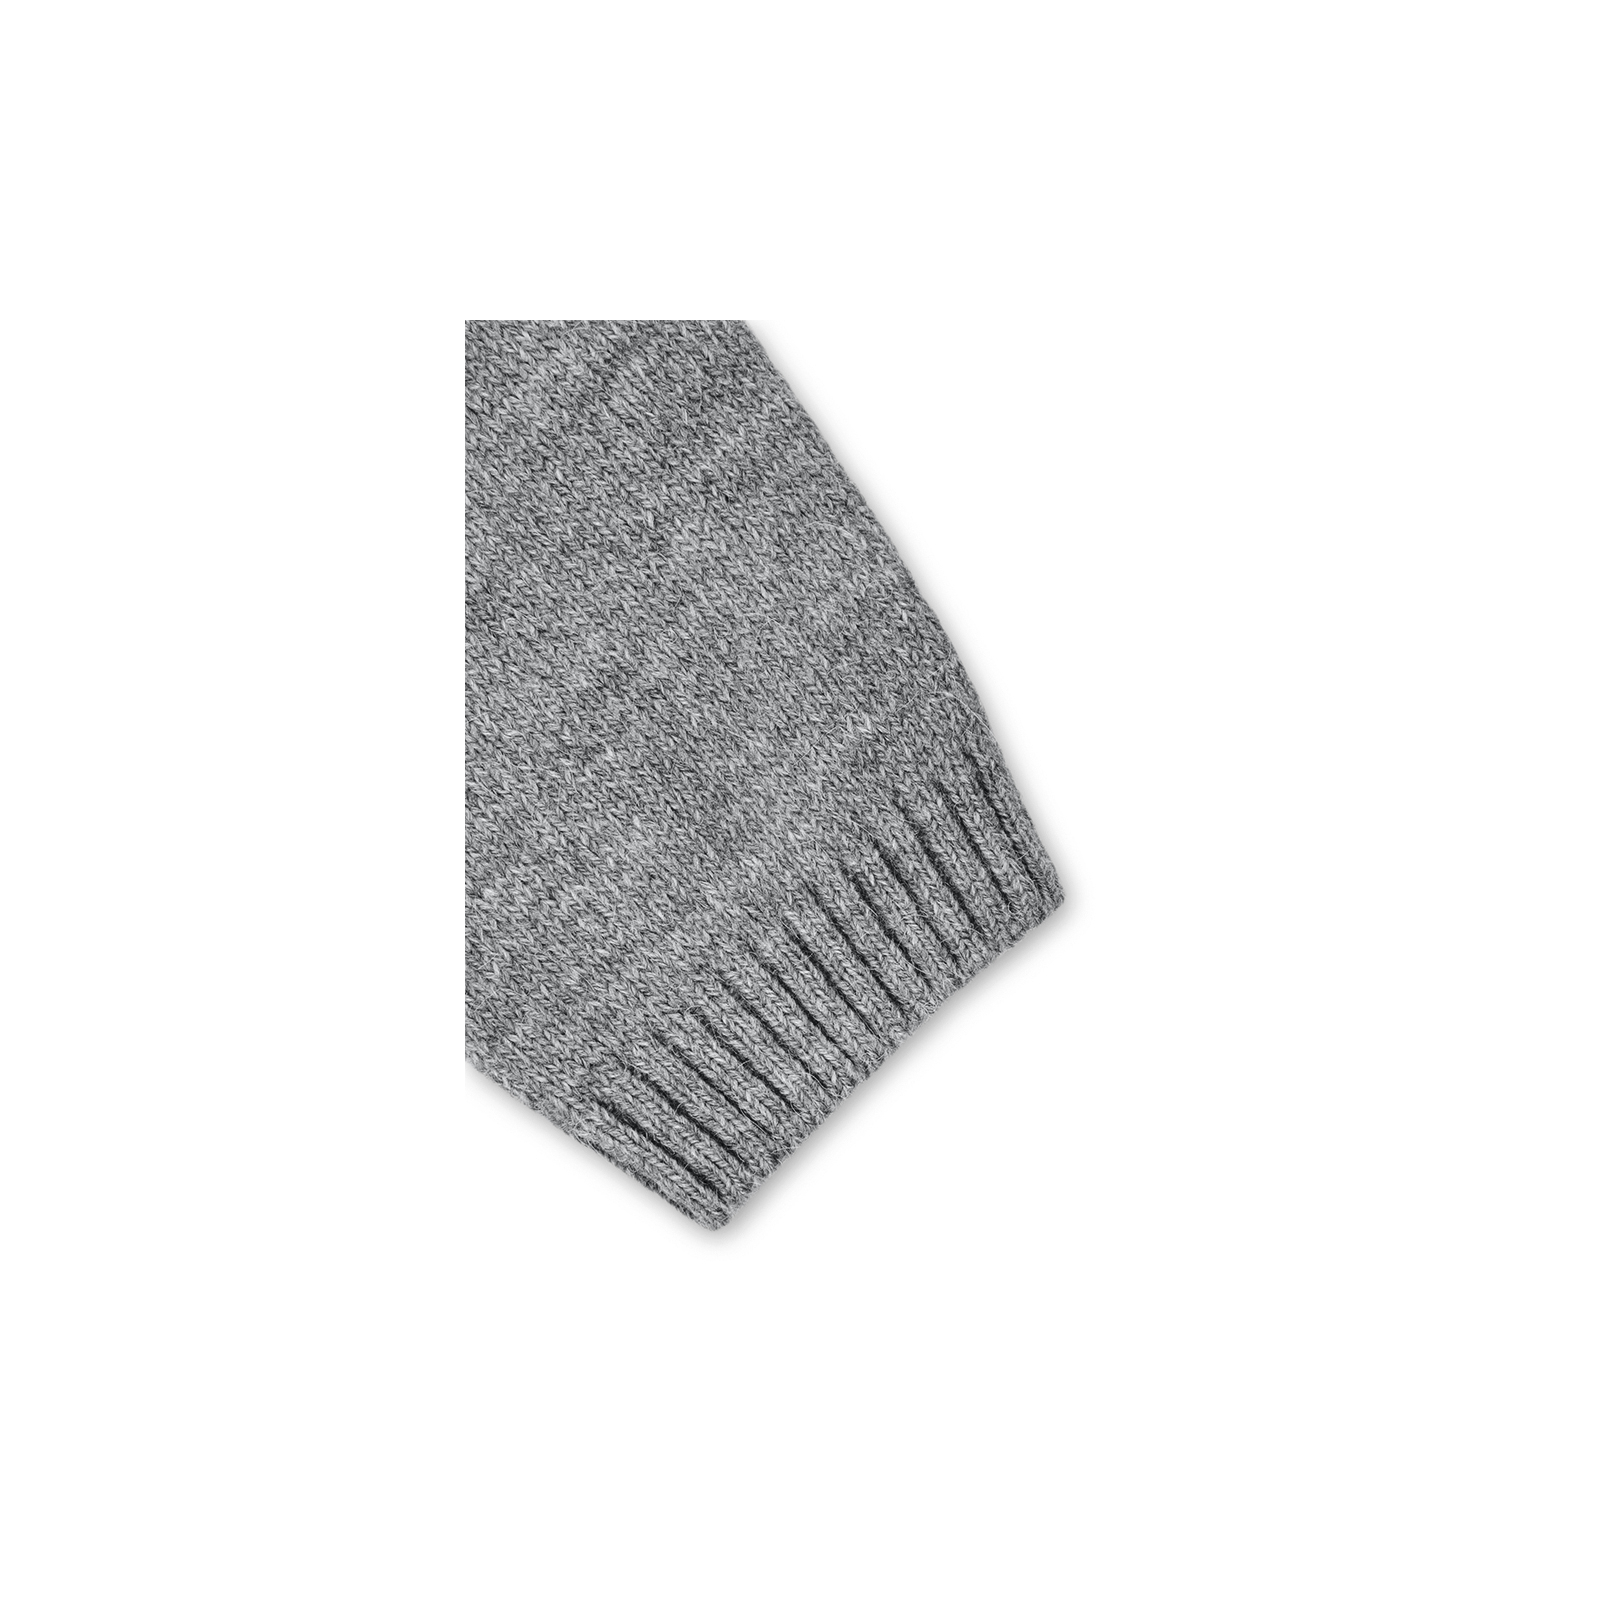 Кофта Breeze джемпер серый меланж со звездочками (T-104-104G-gray) изображение 5